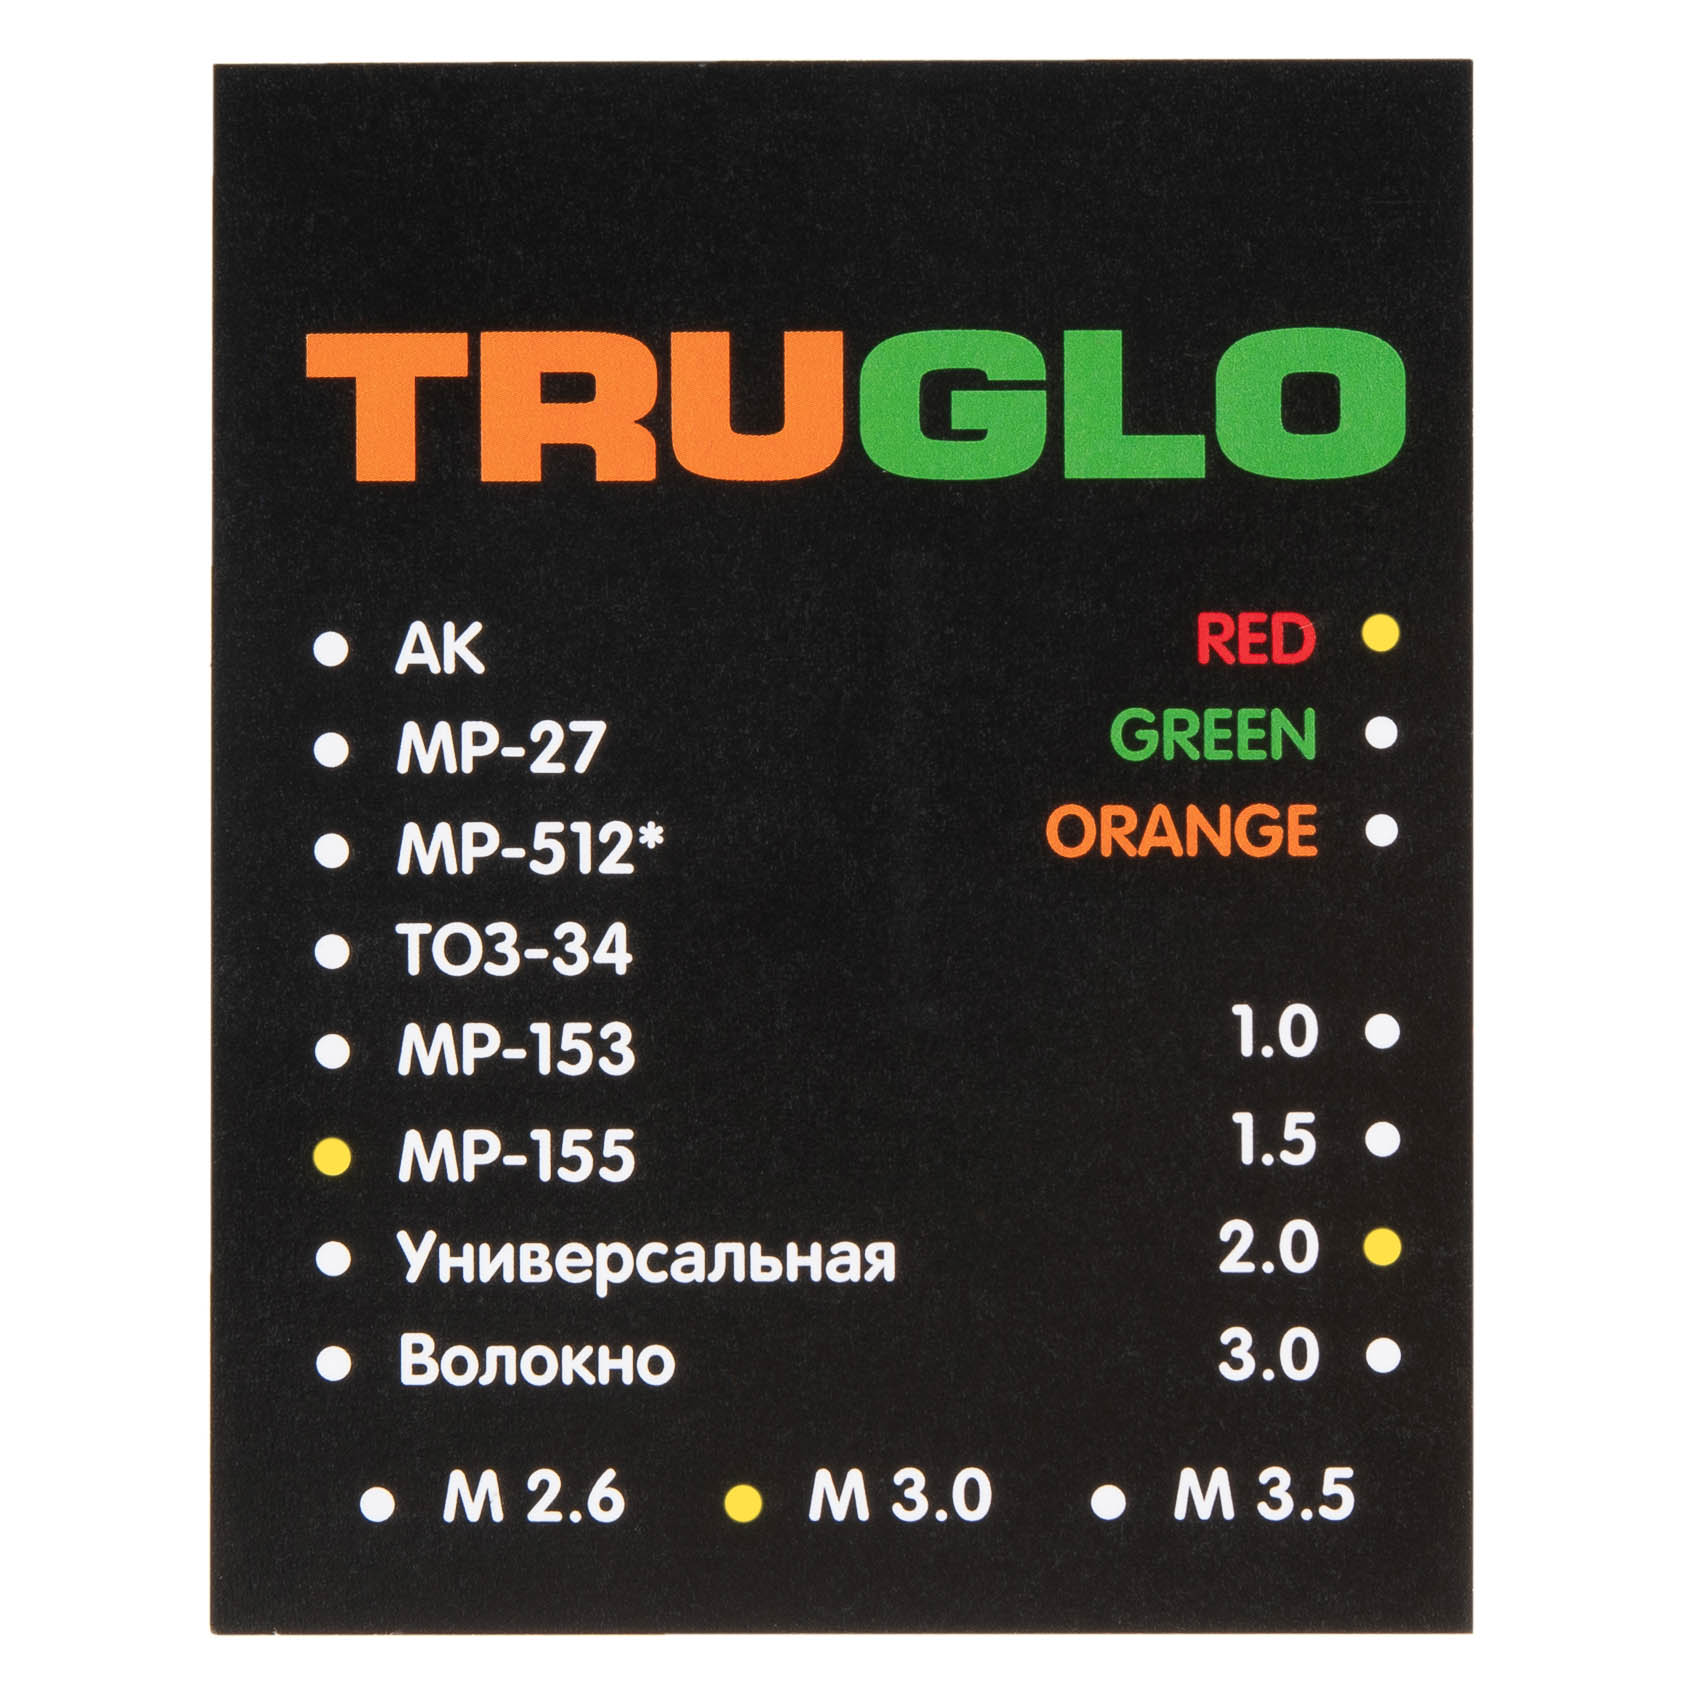 Мушка световозвращающая оптоволоконная красная МР-155/МР-156 TRUGLO,А-013334 - купить по цене 610 руб. в интернет-магазине в Москве